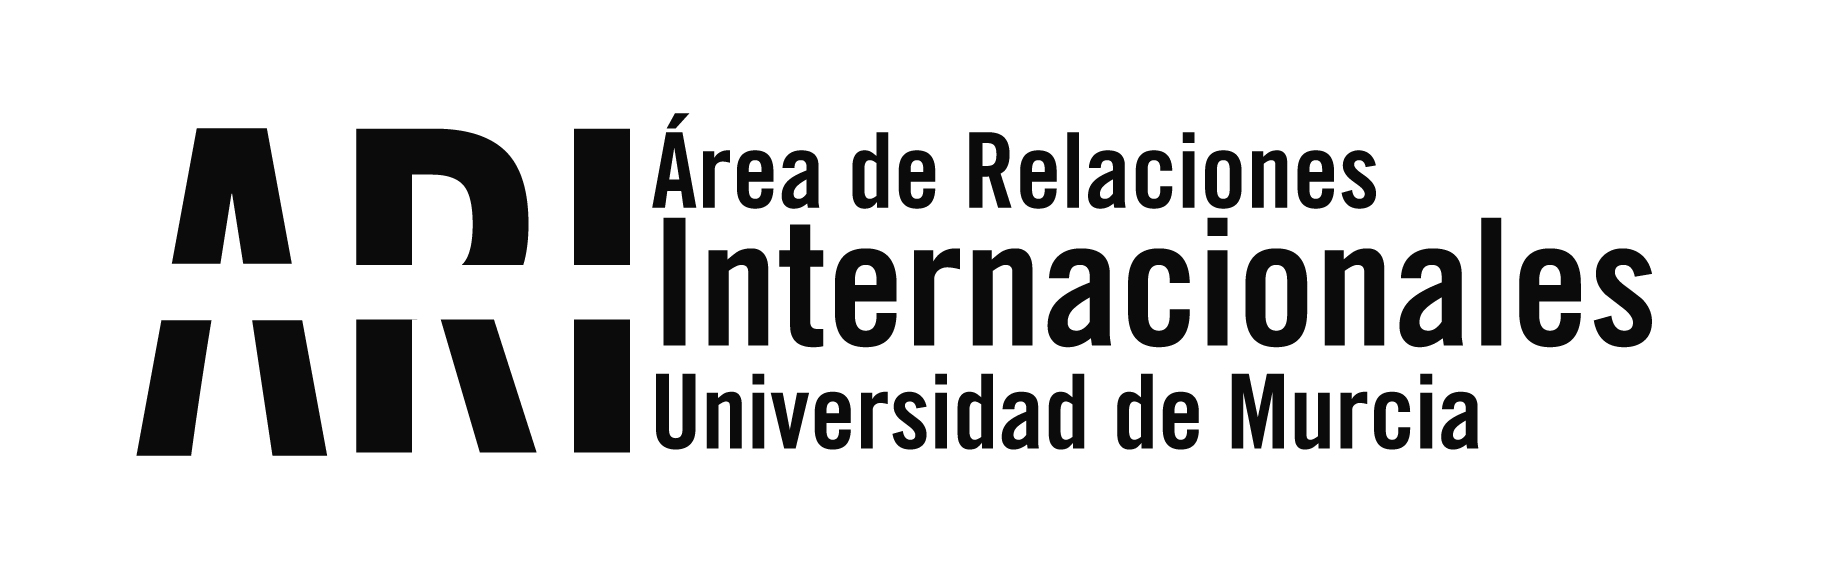 La UMU trabaja con el Gobierno de Ecuador para poner en marcha un gran número de proyectos internacionales - Área de Relaciones Internacionales